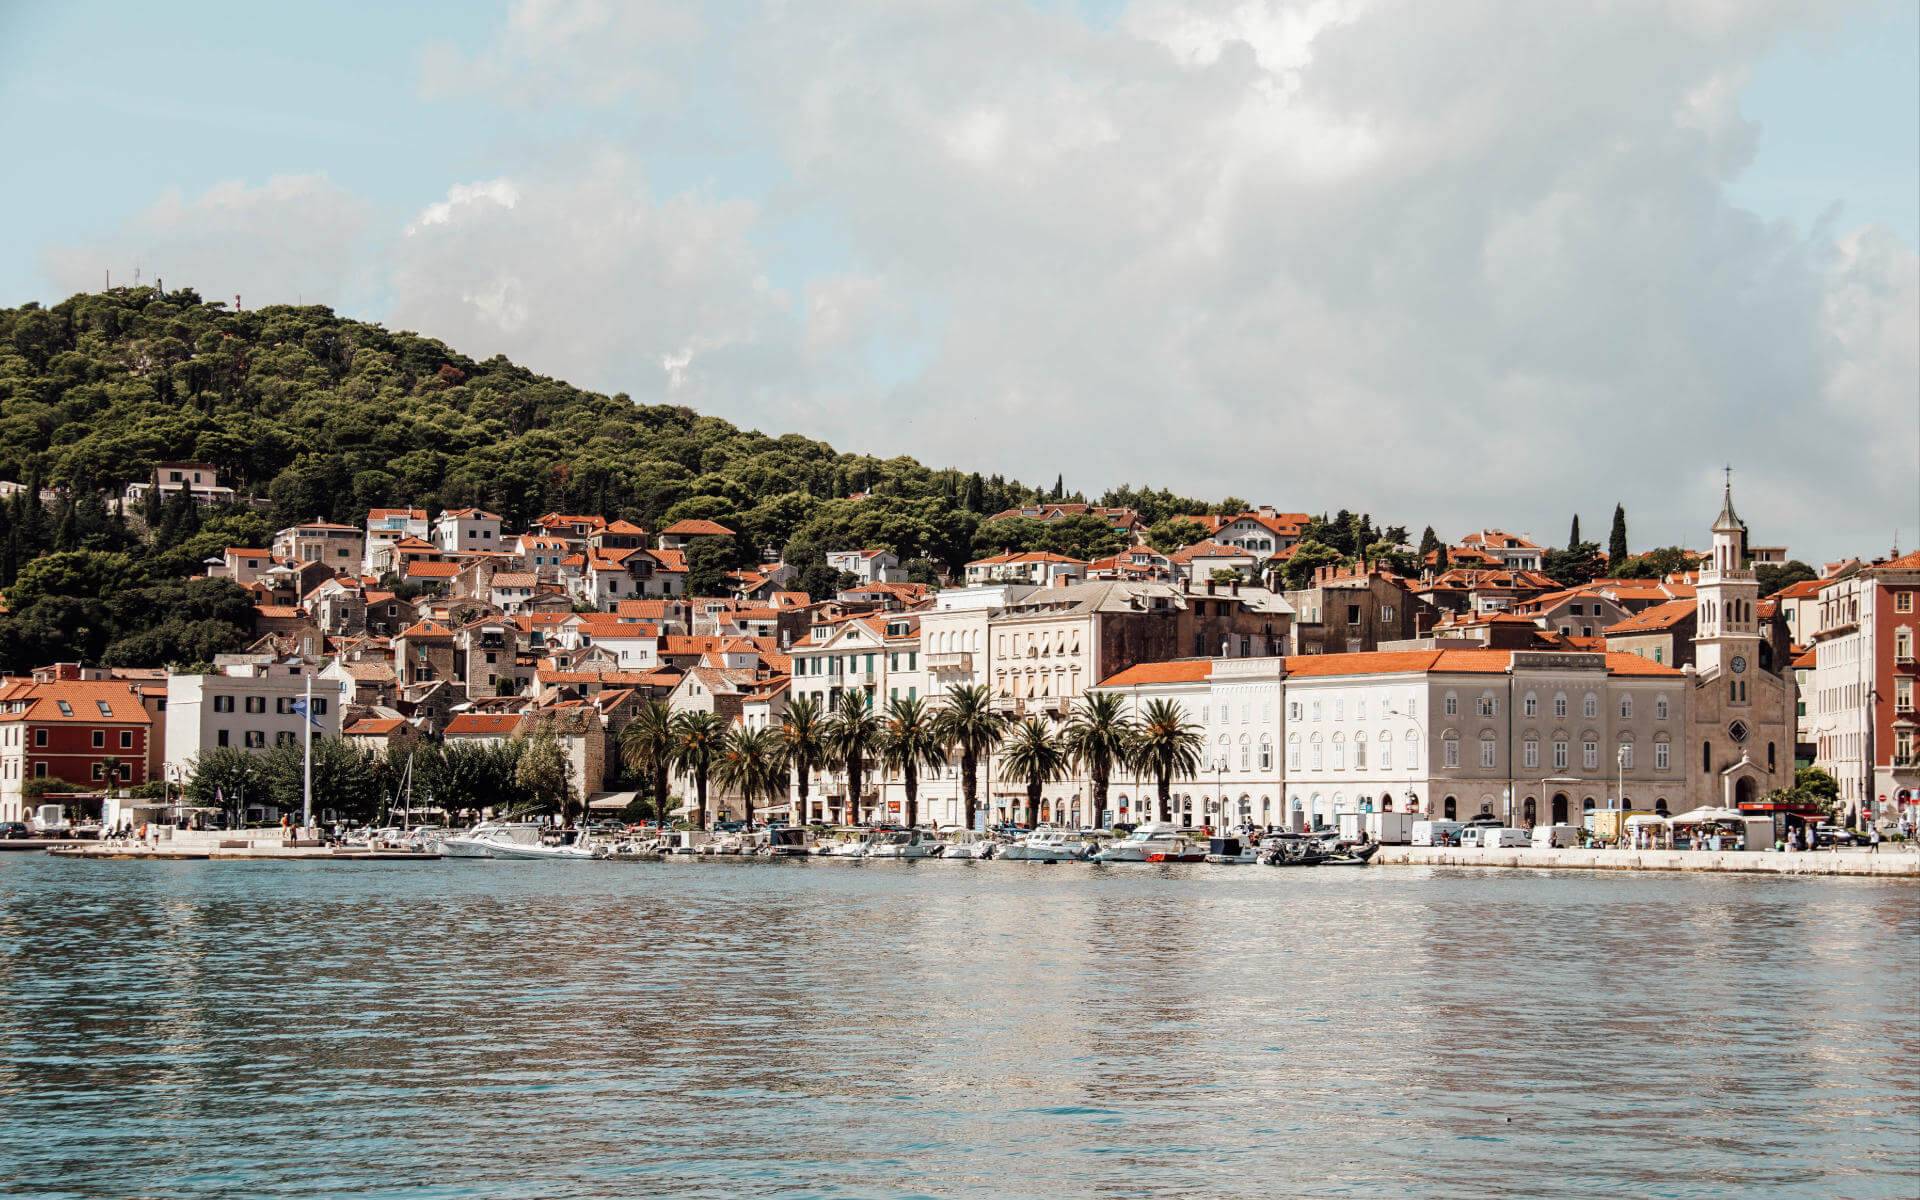 Blick über das Meer auf die mit Palmen gesäumte Uferpromenade der Altstadt von Split.